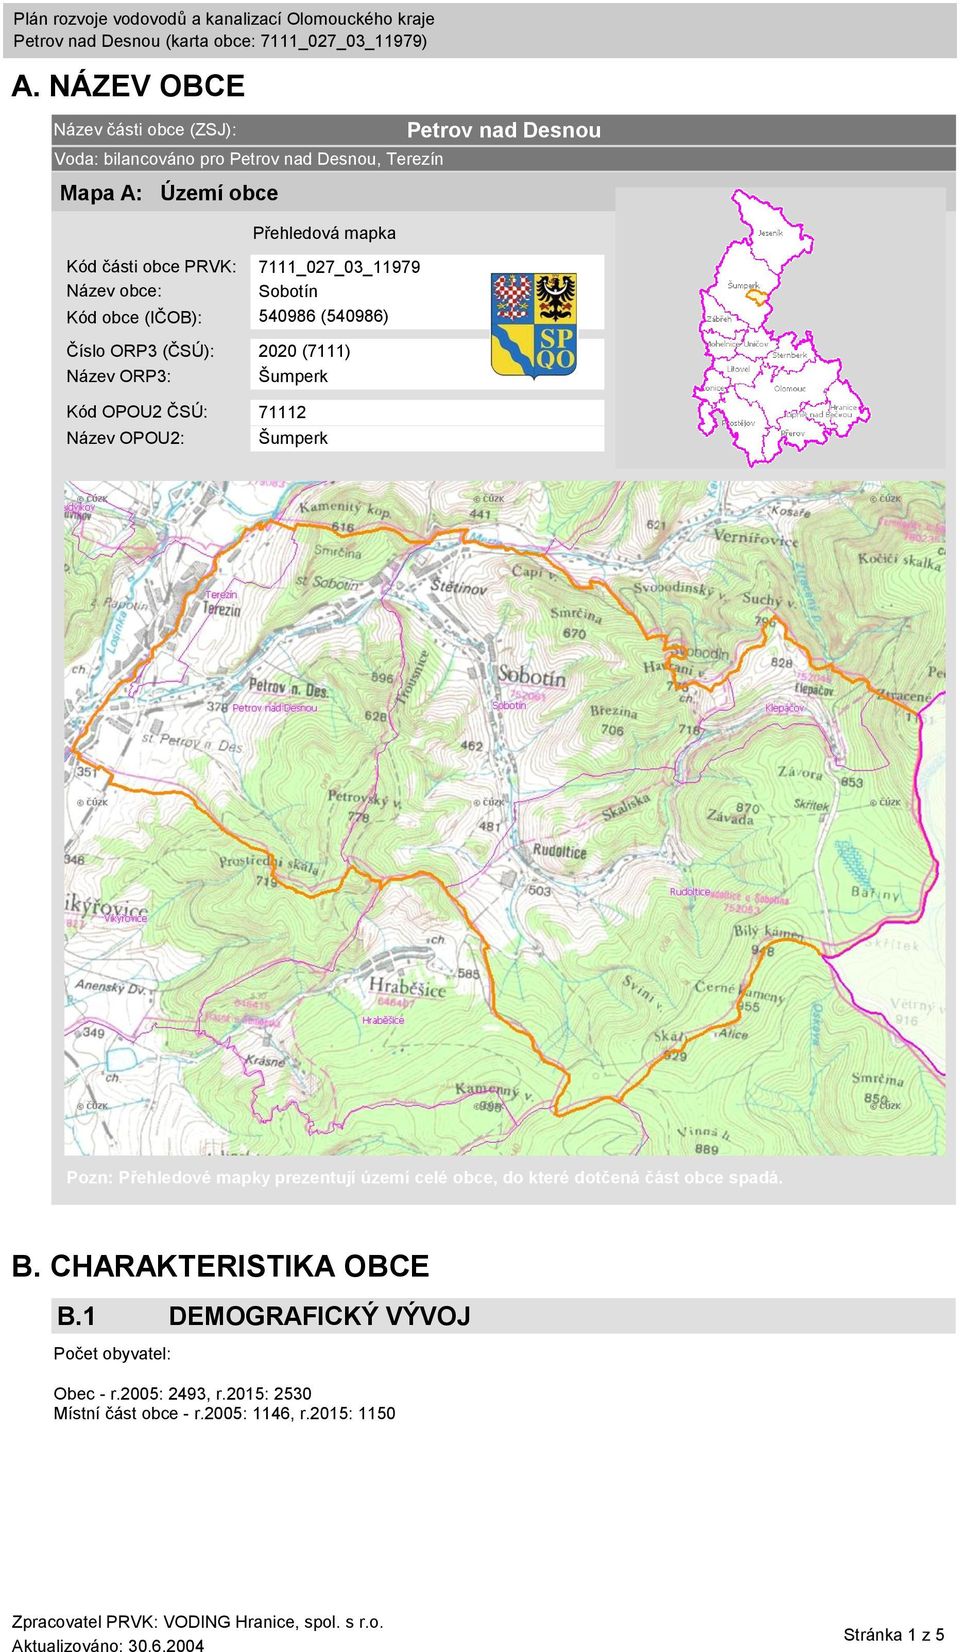 71112 Název OPOU2: Šumperk Petrov nad Desnou Pozn: Přehledové mapky prezentují území celé obce, do které dotčená část obce spadá. B.